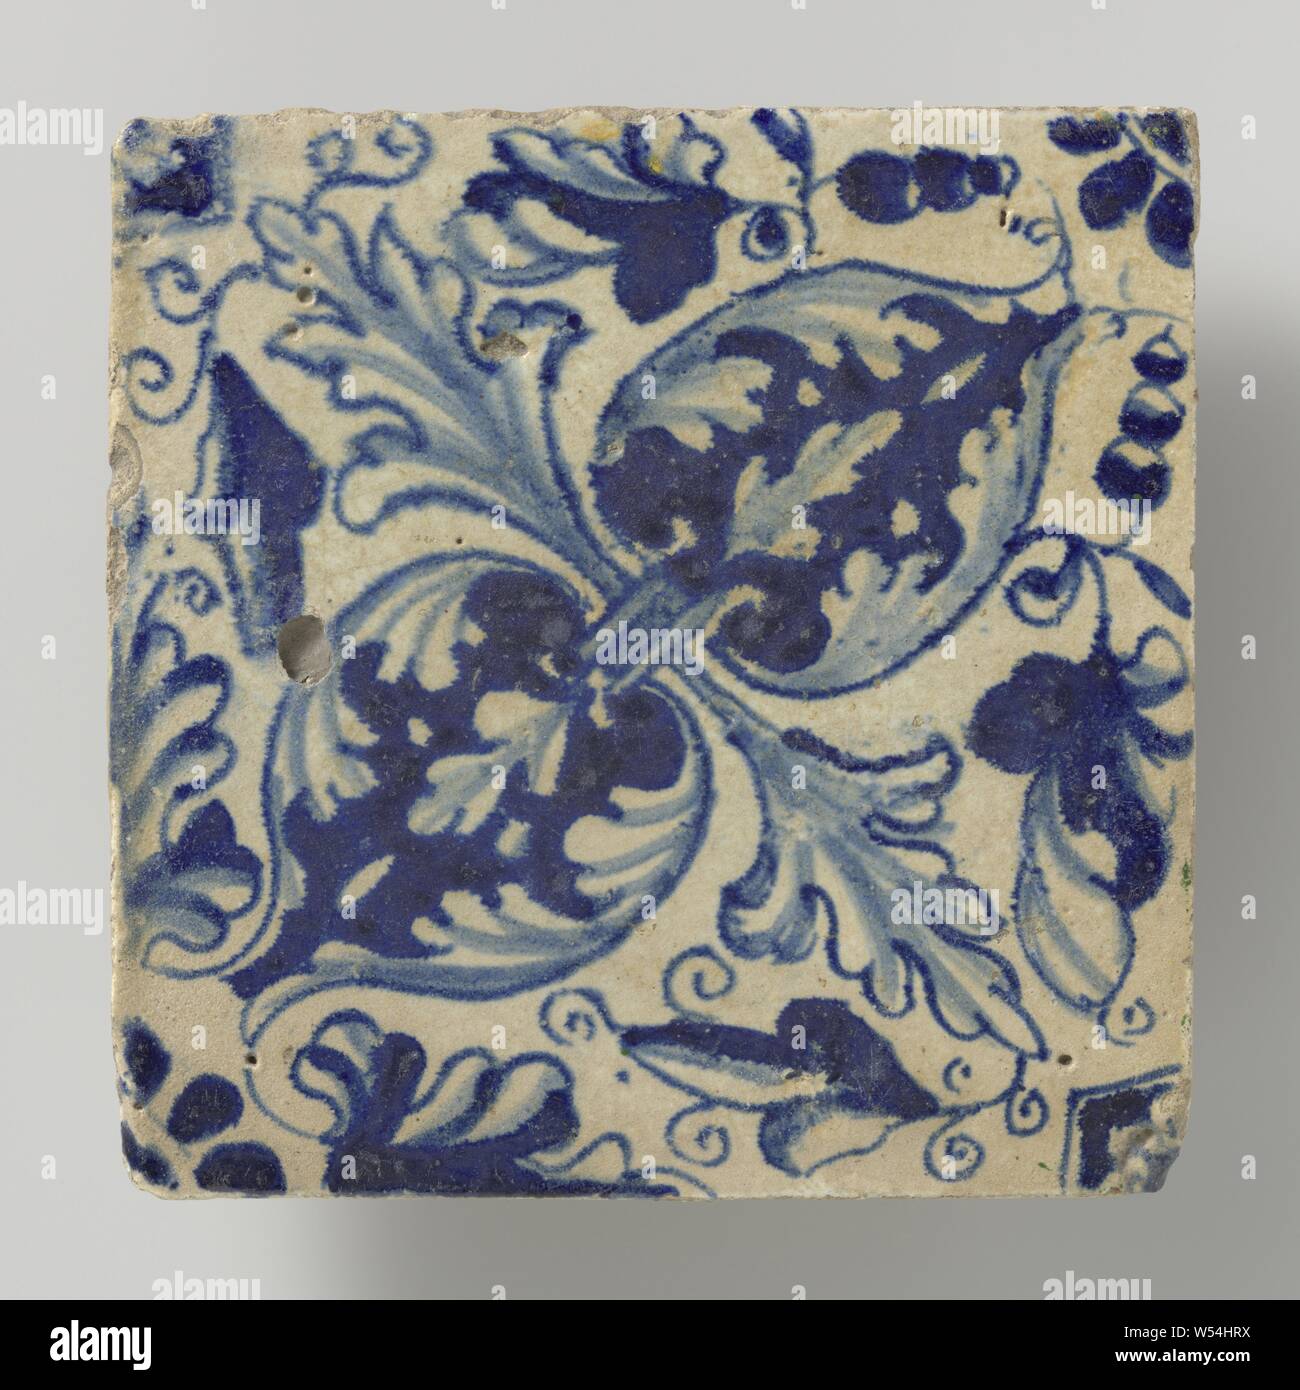 Fliese, Fliese mit blau lackierten Blatt Muster von Eichenlaub, diagonal., anonym, Niederlande, 1615 - 1625, Steingut, Zinn Glasur, h 13,5 cm x W 13,5 cm x T 1,7 cm Stockfoto